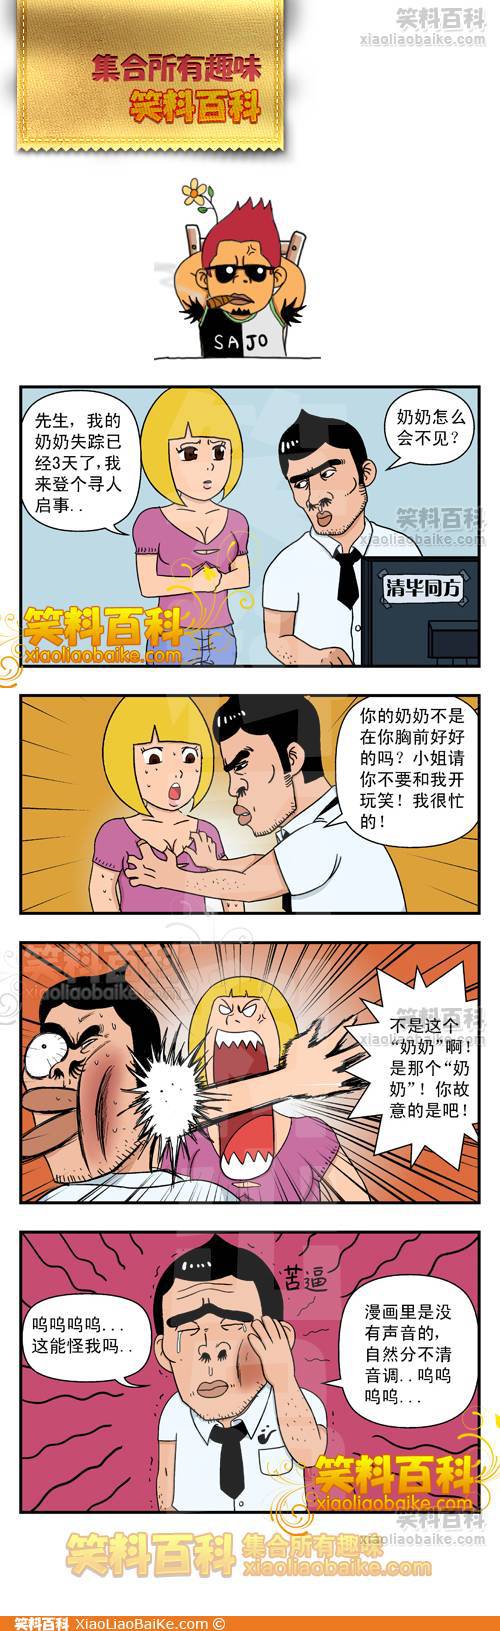 邪恶漫画爆笑囧图第32刊：迷人